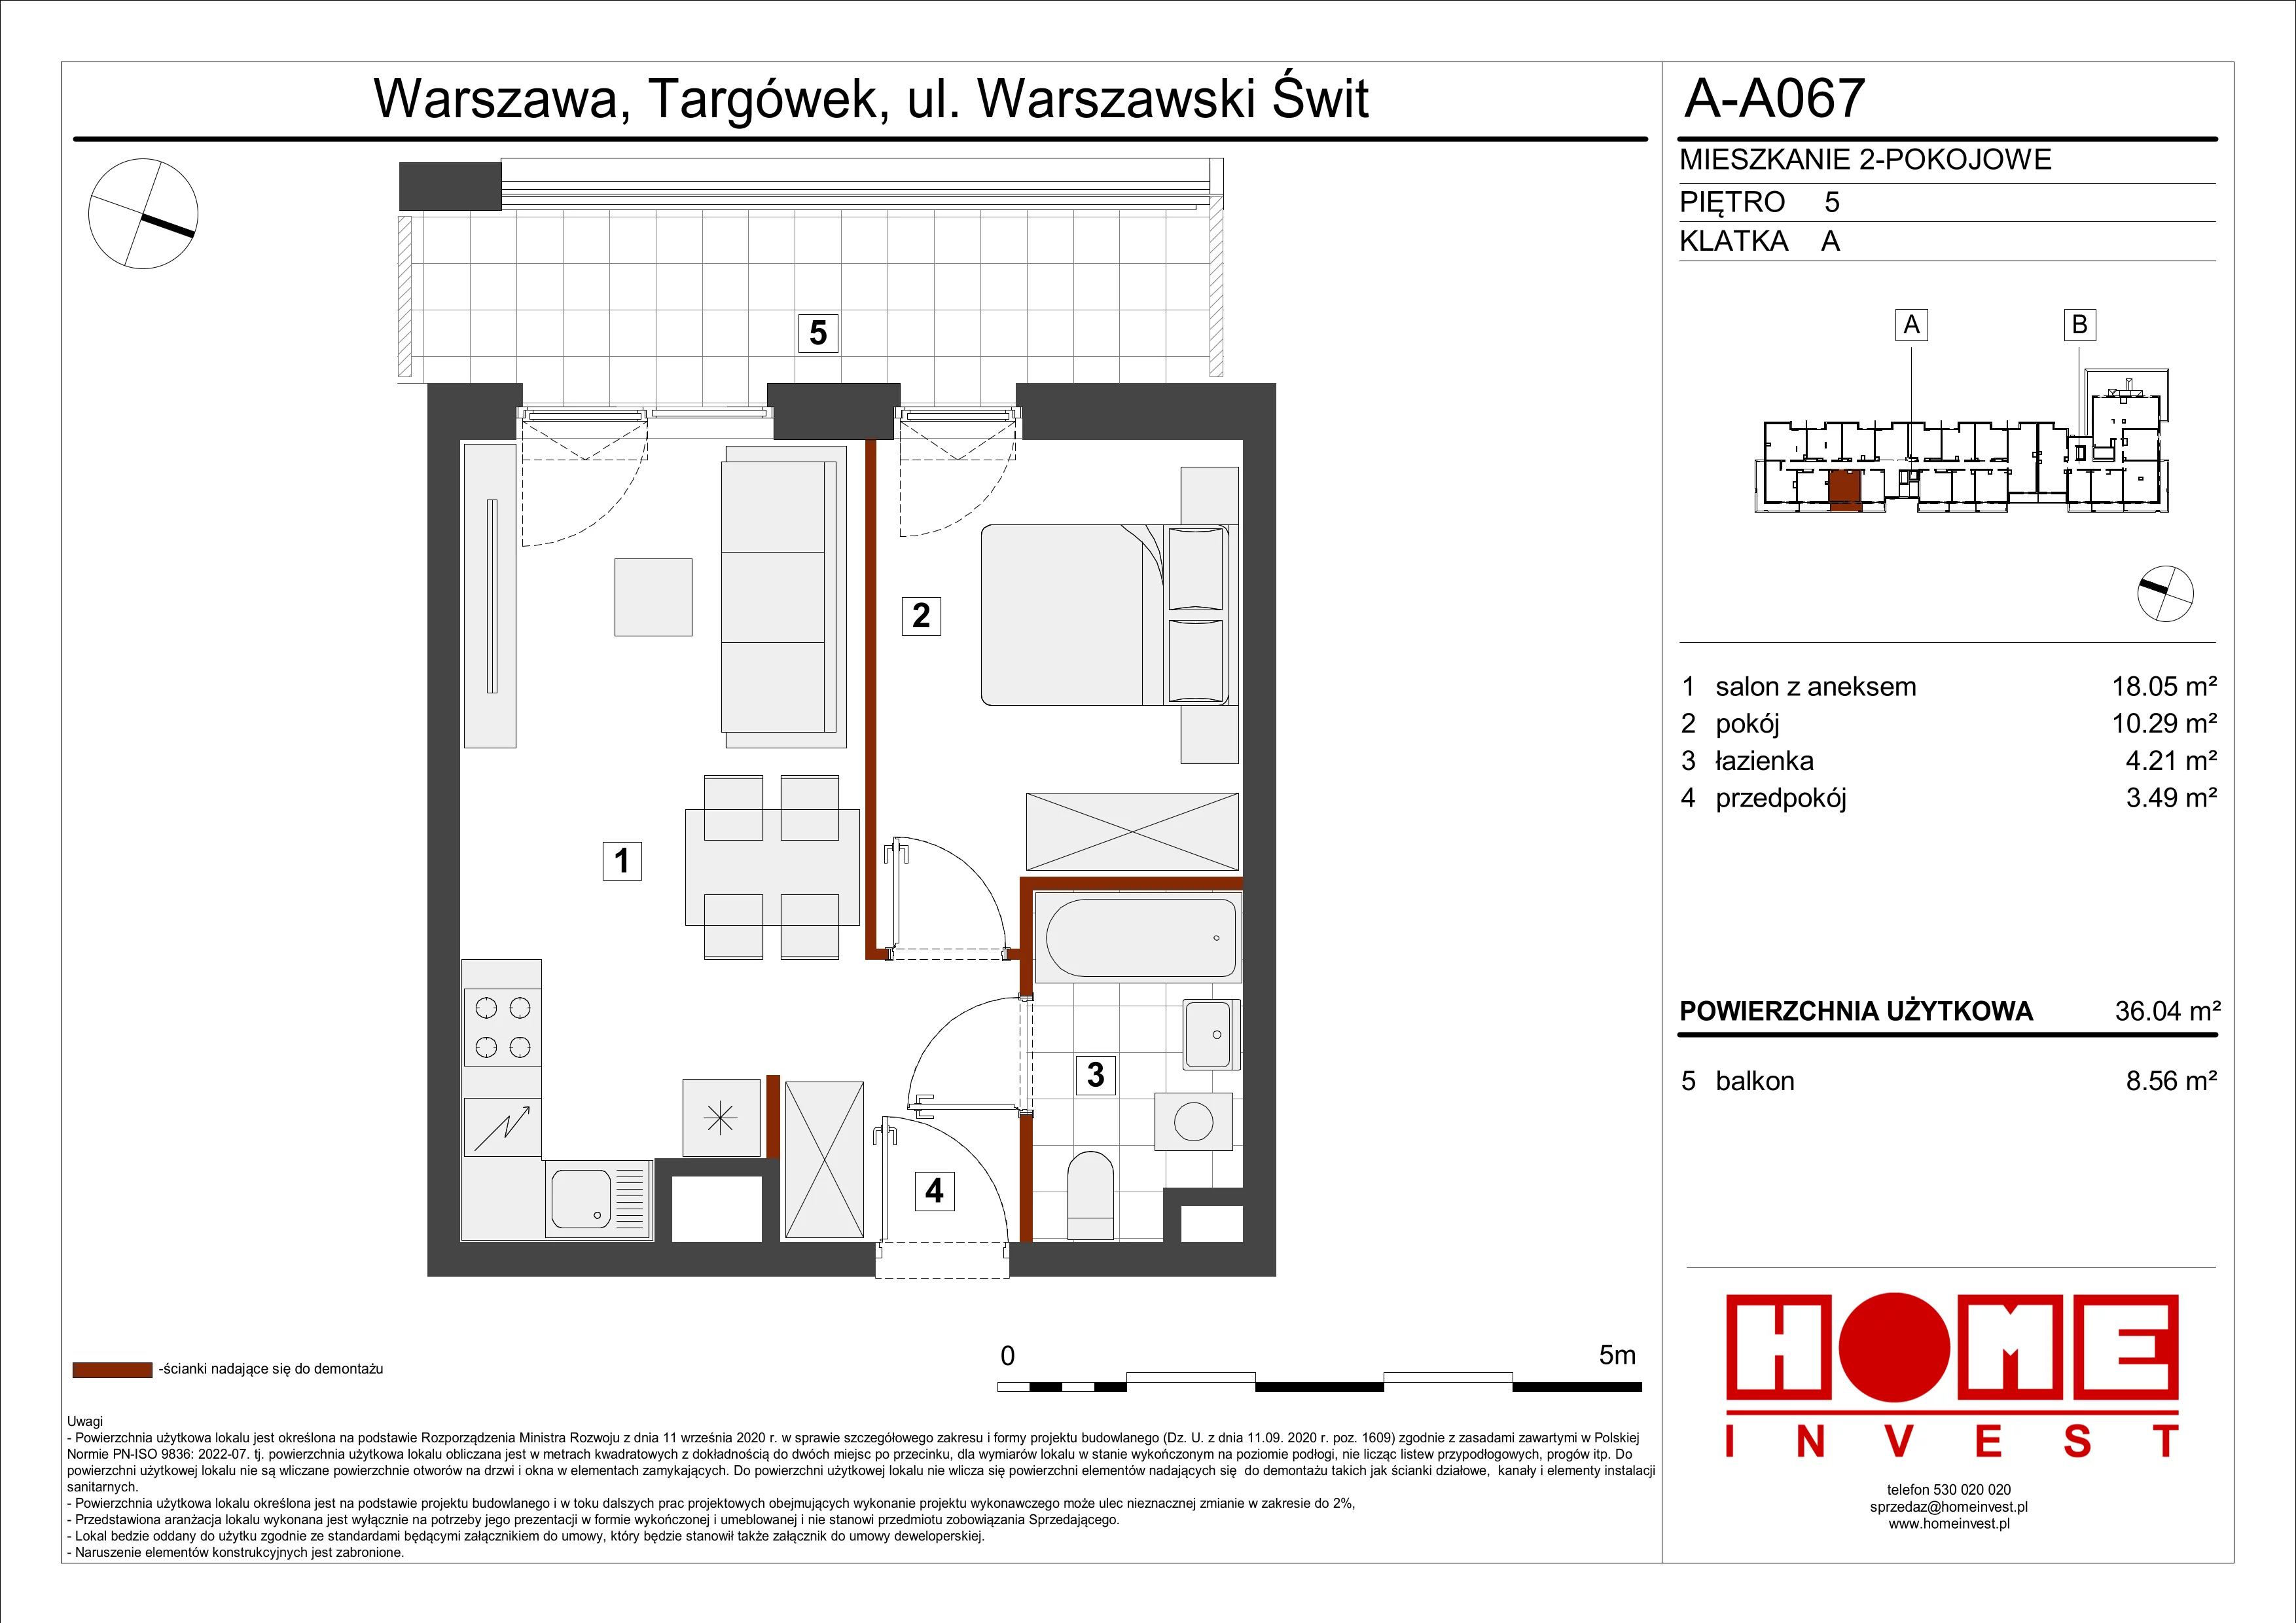 Mieszkanie 36,04 m², piętro 5, oferta nr A-A067, Warszawski Świt, Warszawa, Targówek, Bródno, ul. Warszawski Świt 5